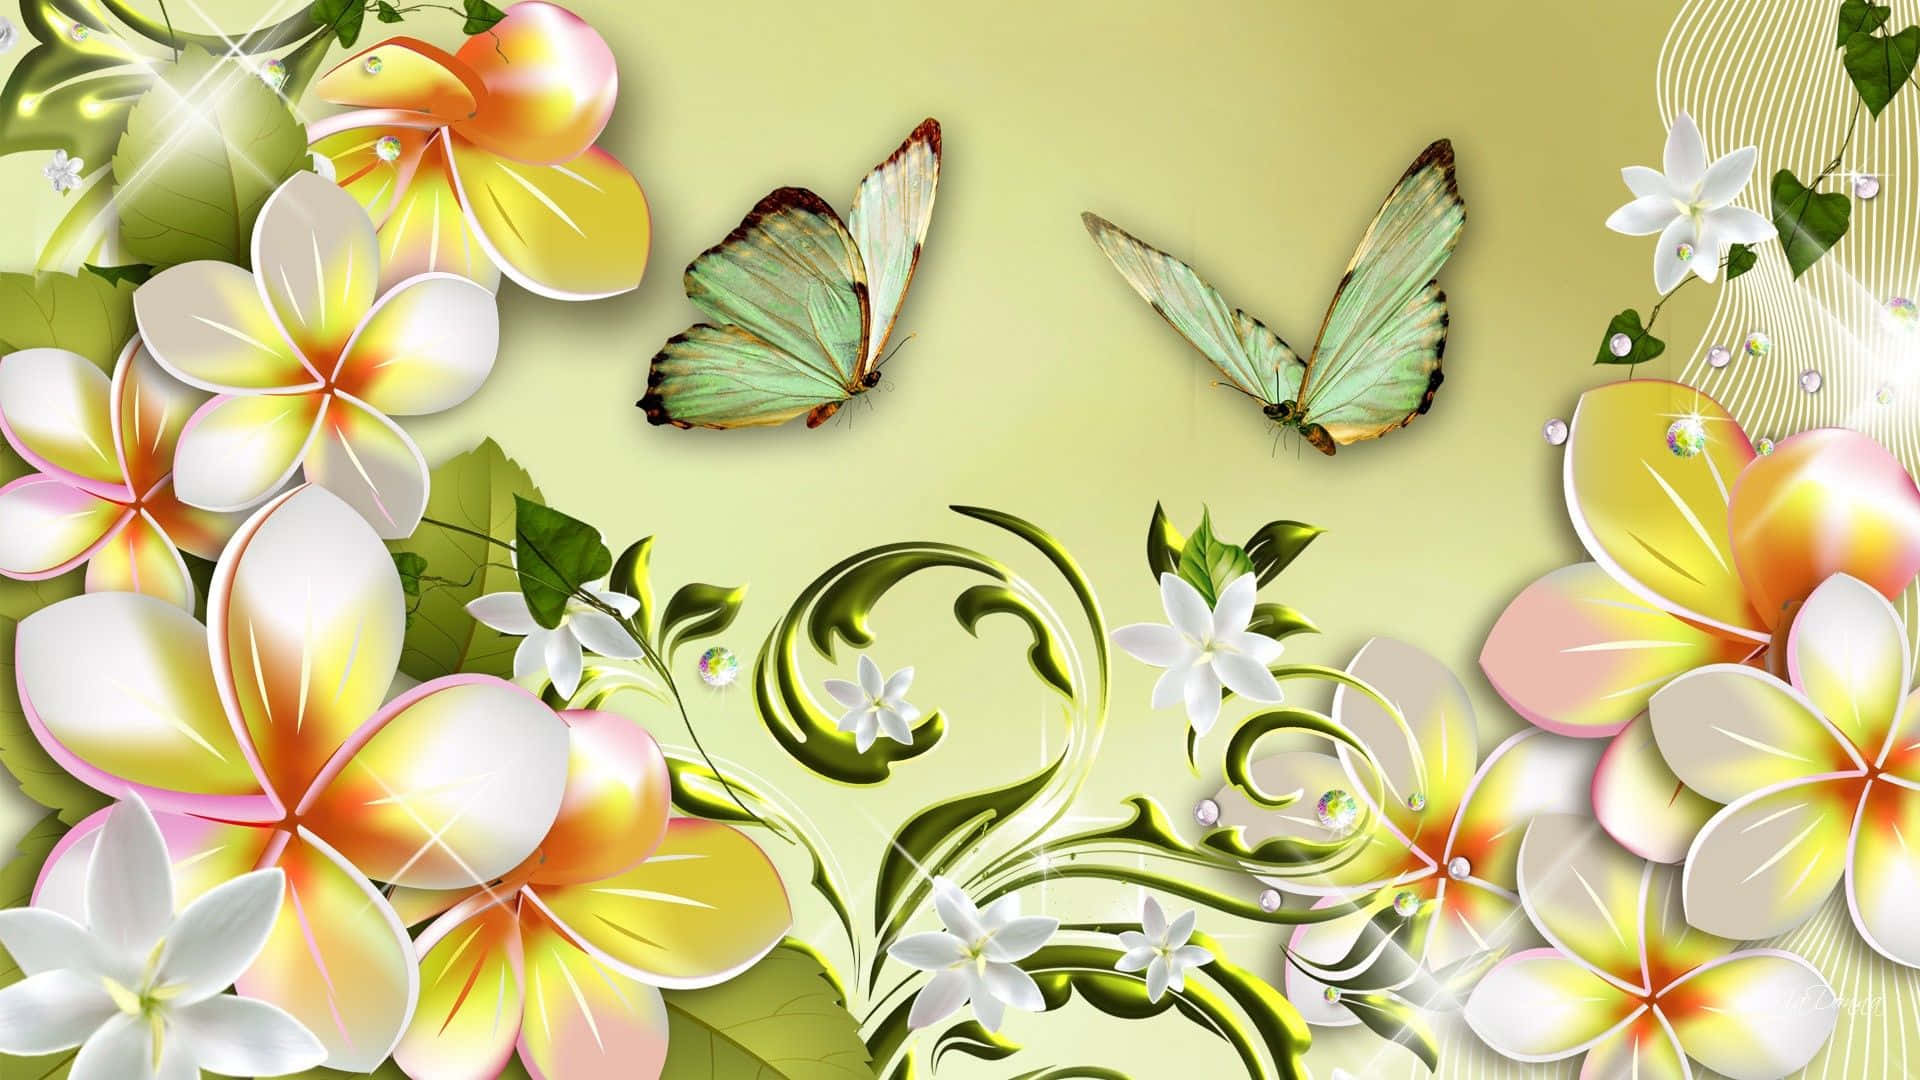 Vibrant Spring Butterflies in a Serene Garden Wallpaper